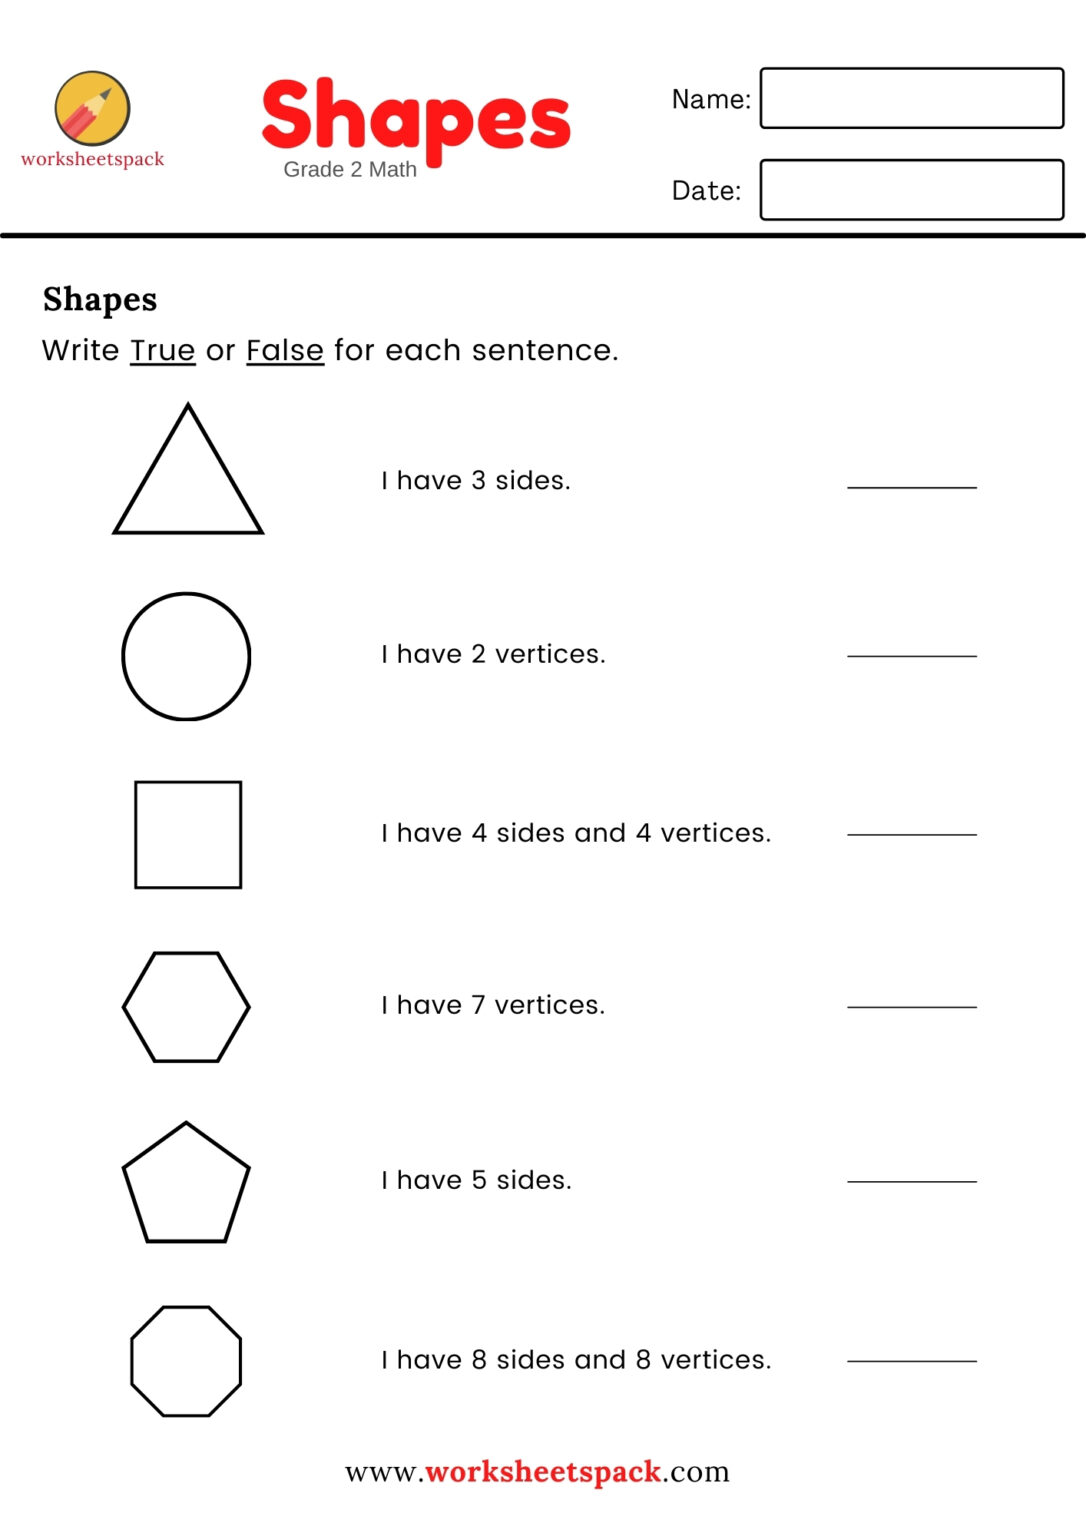 shapes activity grade 2